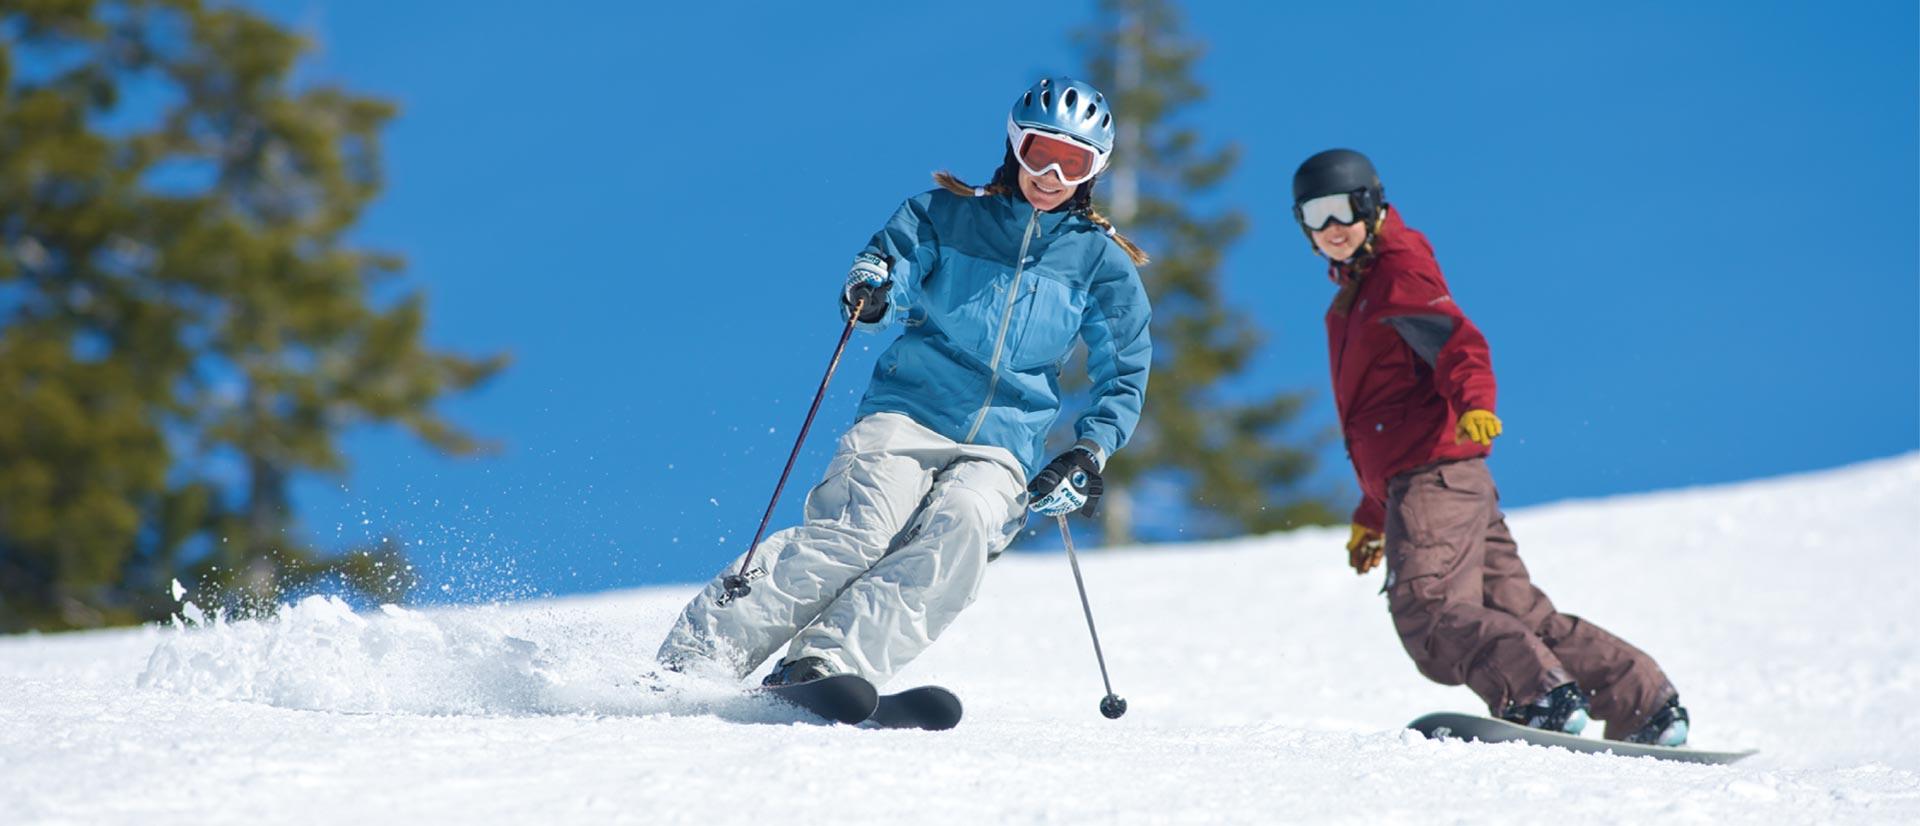 Snow Skier Logo - Dodge Ridge Ski Area closest California Snow to the Bay Area